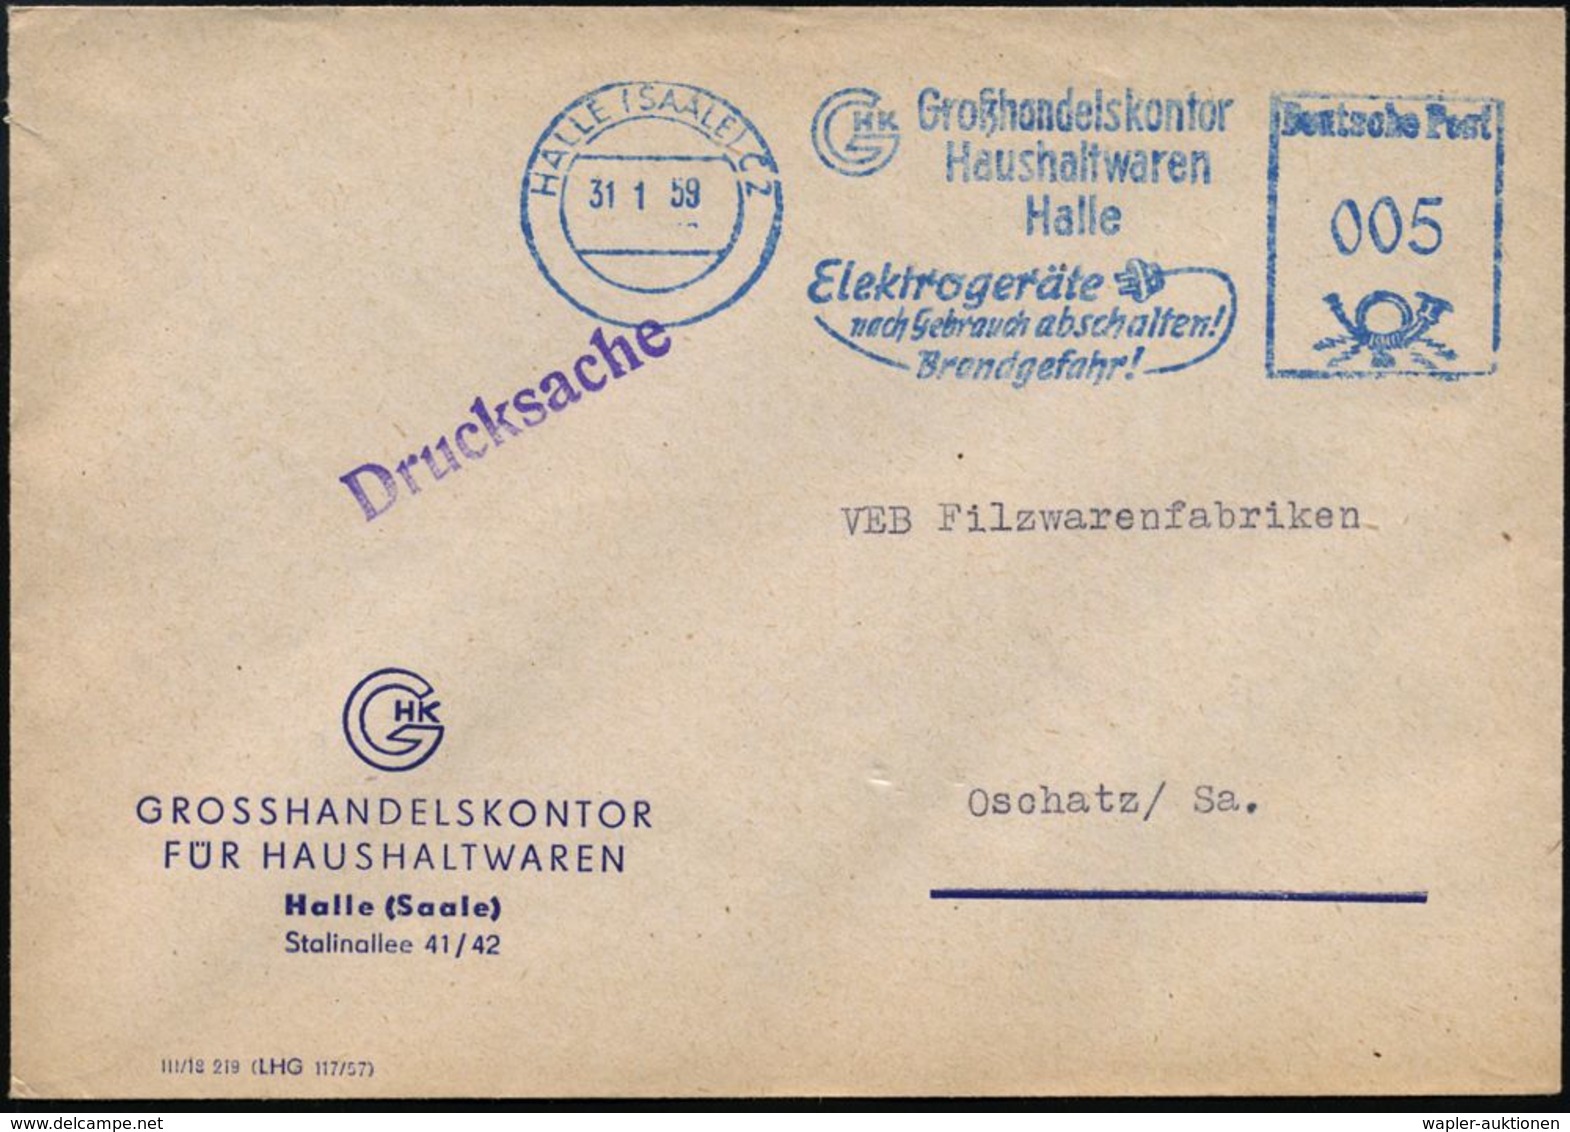 HALLE (SAALE) C2/ Großhandelskontor/ Haushaltswaren/ ..Elektrogeräte/ Nach Gebrauch Abschalten!/  Brandgefahr! 1959 (31. - Sapeurs-Pompiers